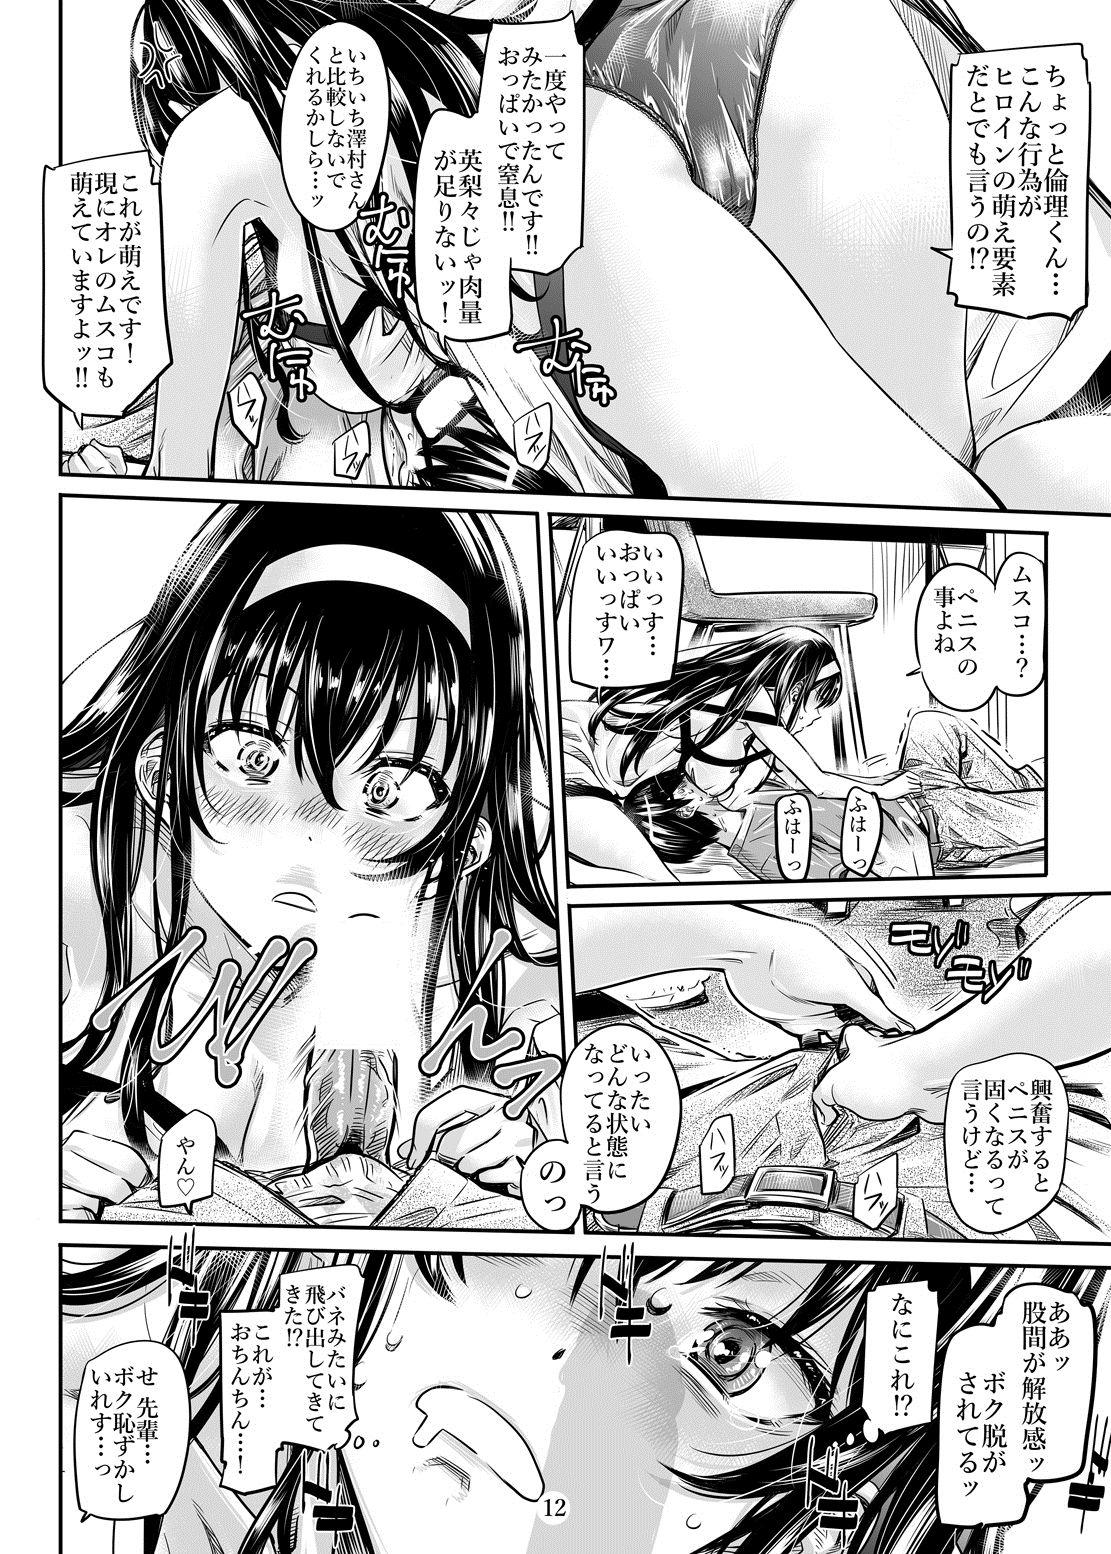 Jav Saenai Heroine Series Vol. 2 - Saenai Namaashi Senpai no Ijirikata - Saenai heroine no sodatekata Hole - Page 11